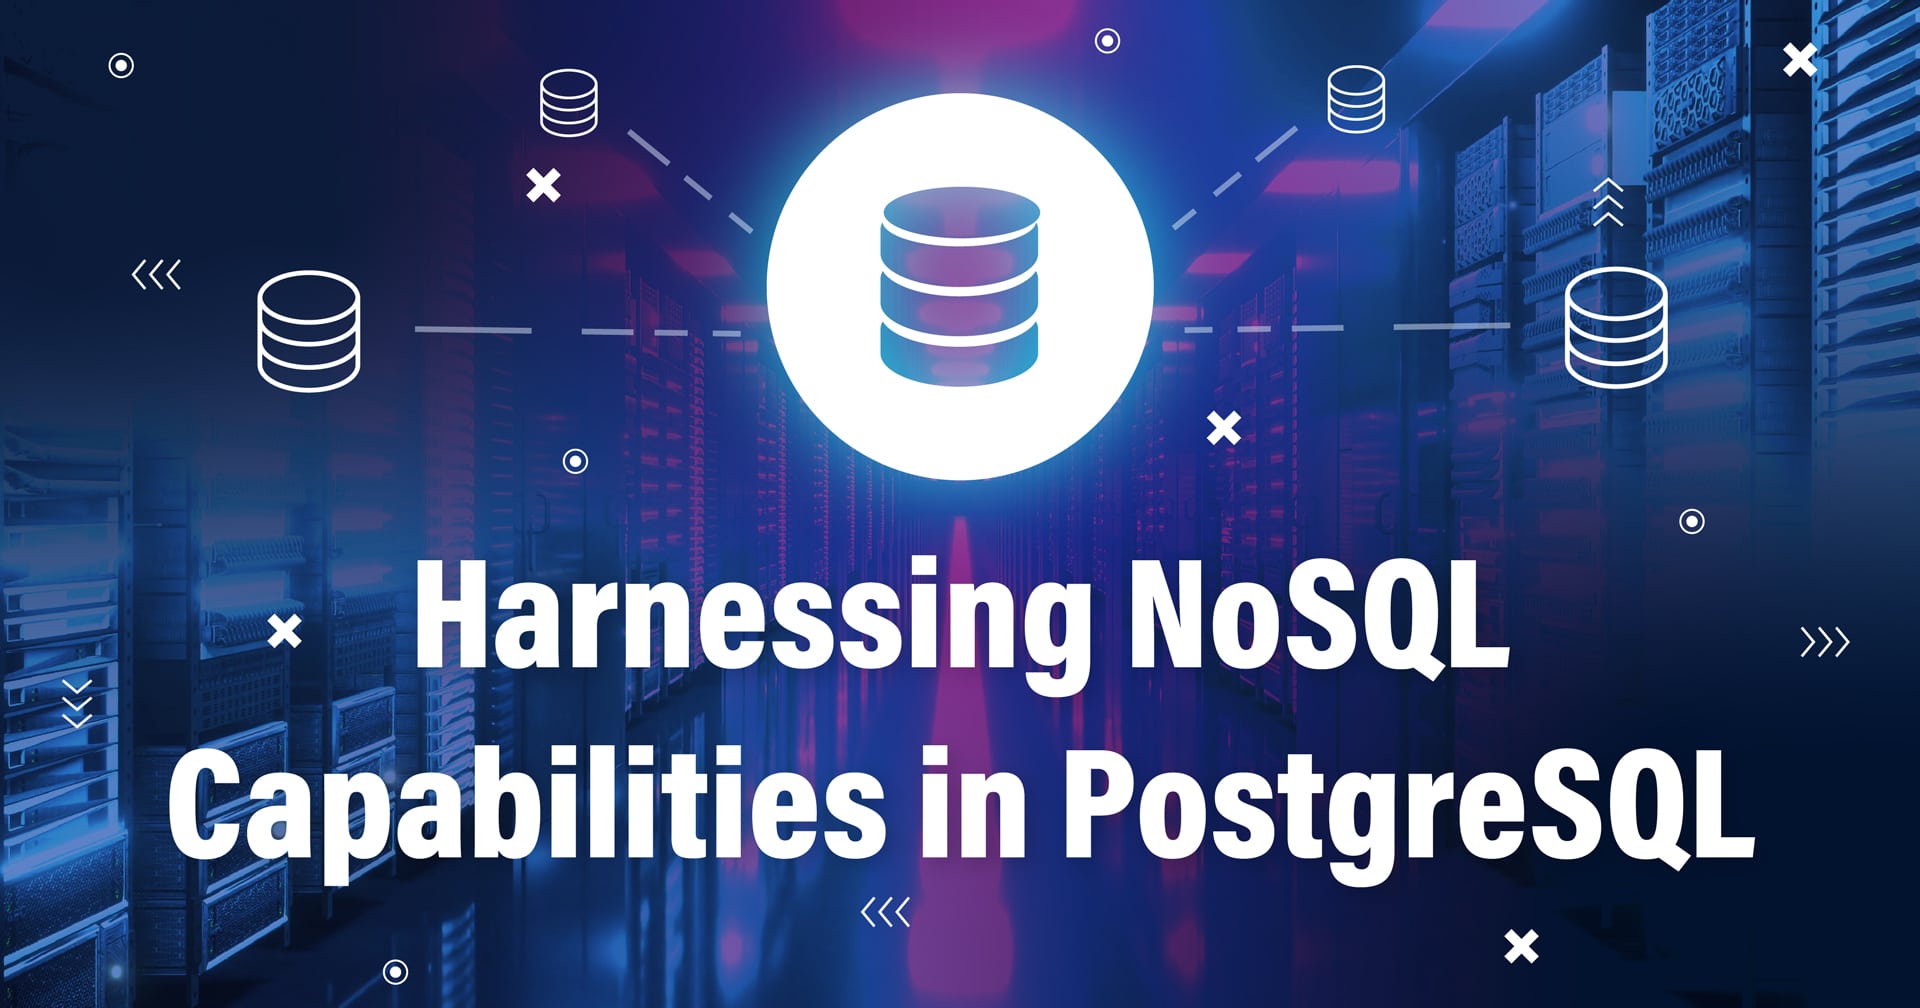 图片中的符号代表一个与其他数据库连接的数据库，底部有文字 "利用 PostgreSQL 中的 NoSQL 功能"。